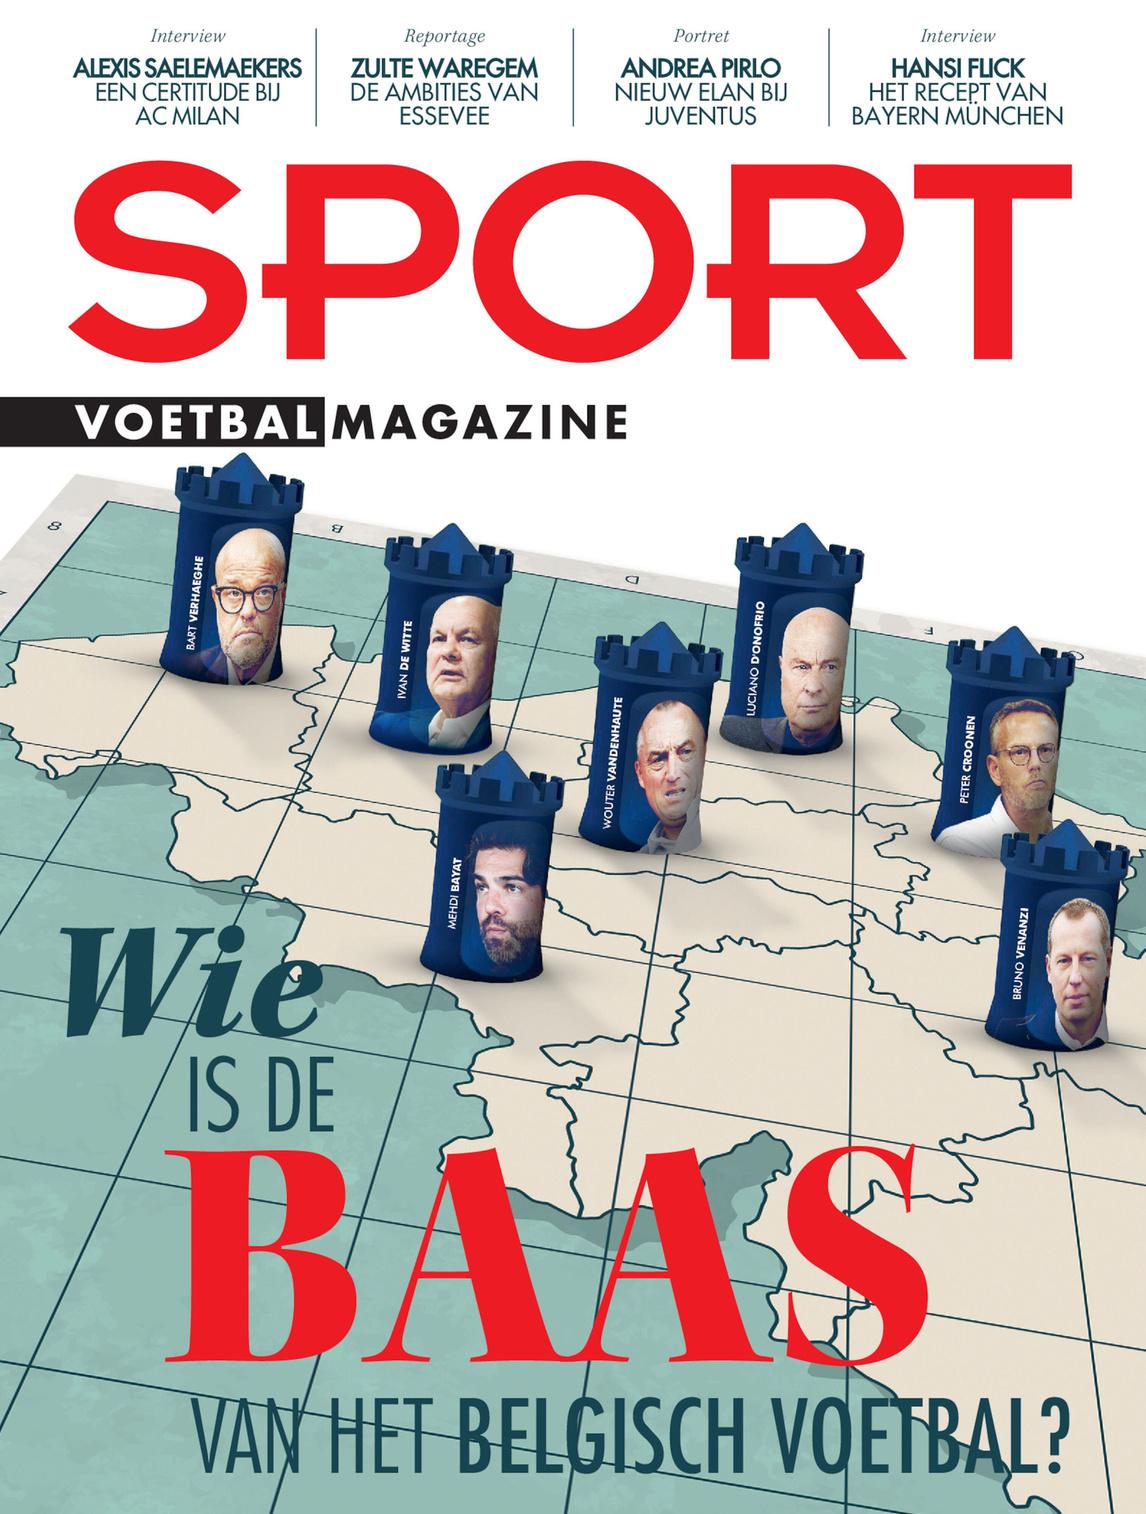 Deze week in Sport/Voetbalmagazine: de baas van het Belgisch voetbal, Alexis Saelemaekers en 75 jaar Eupen